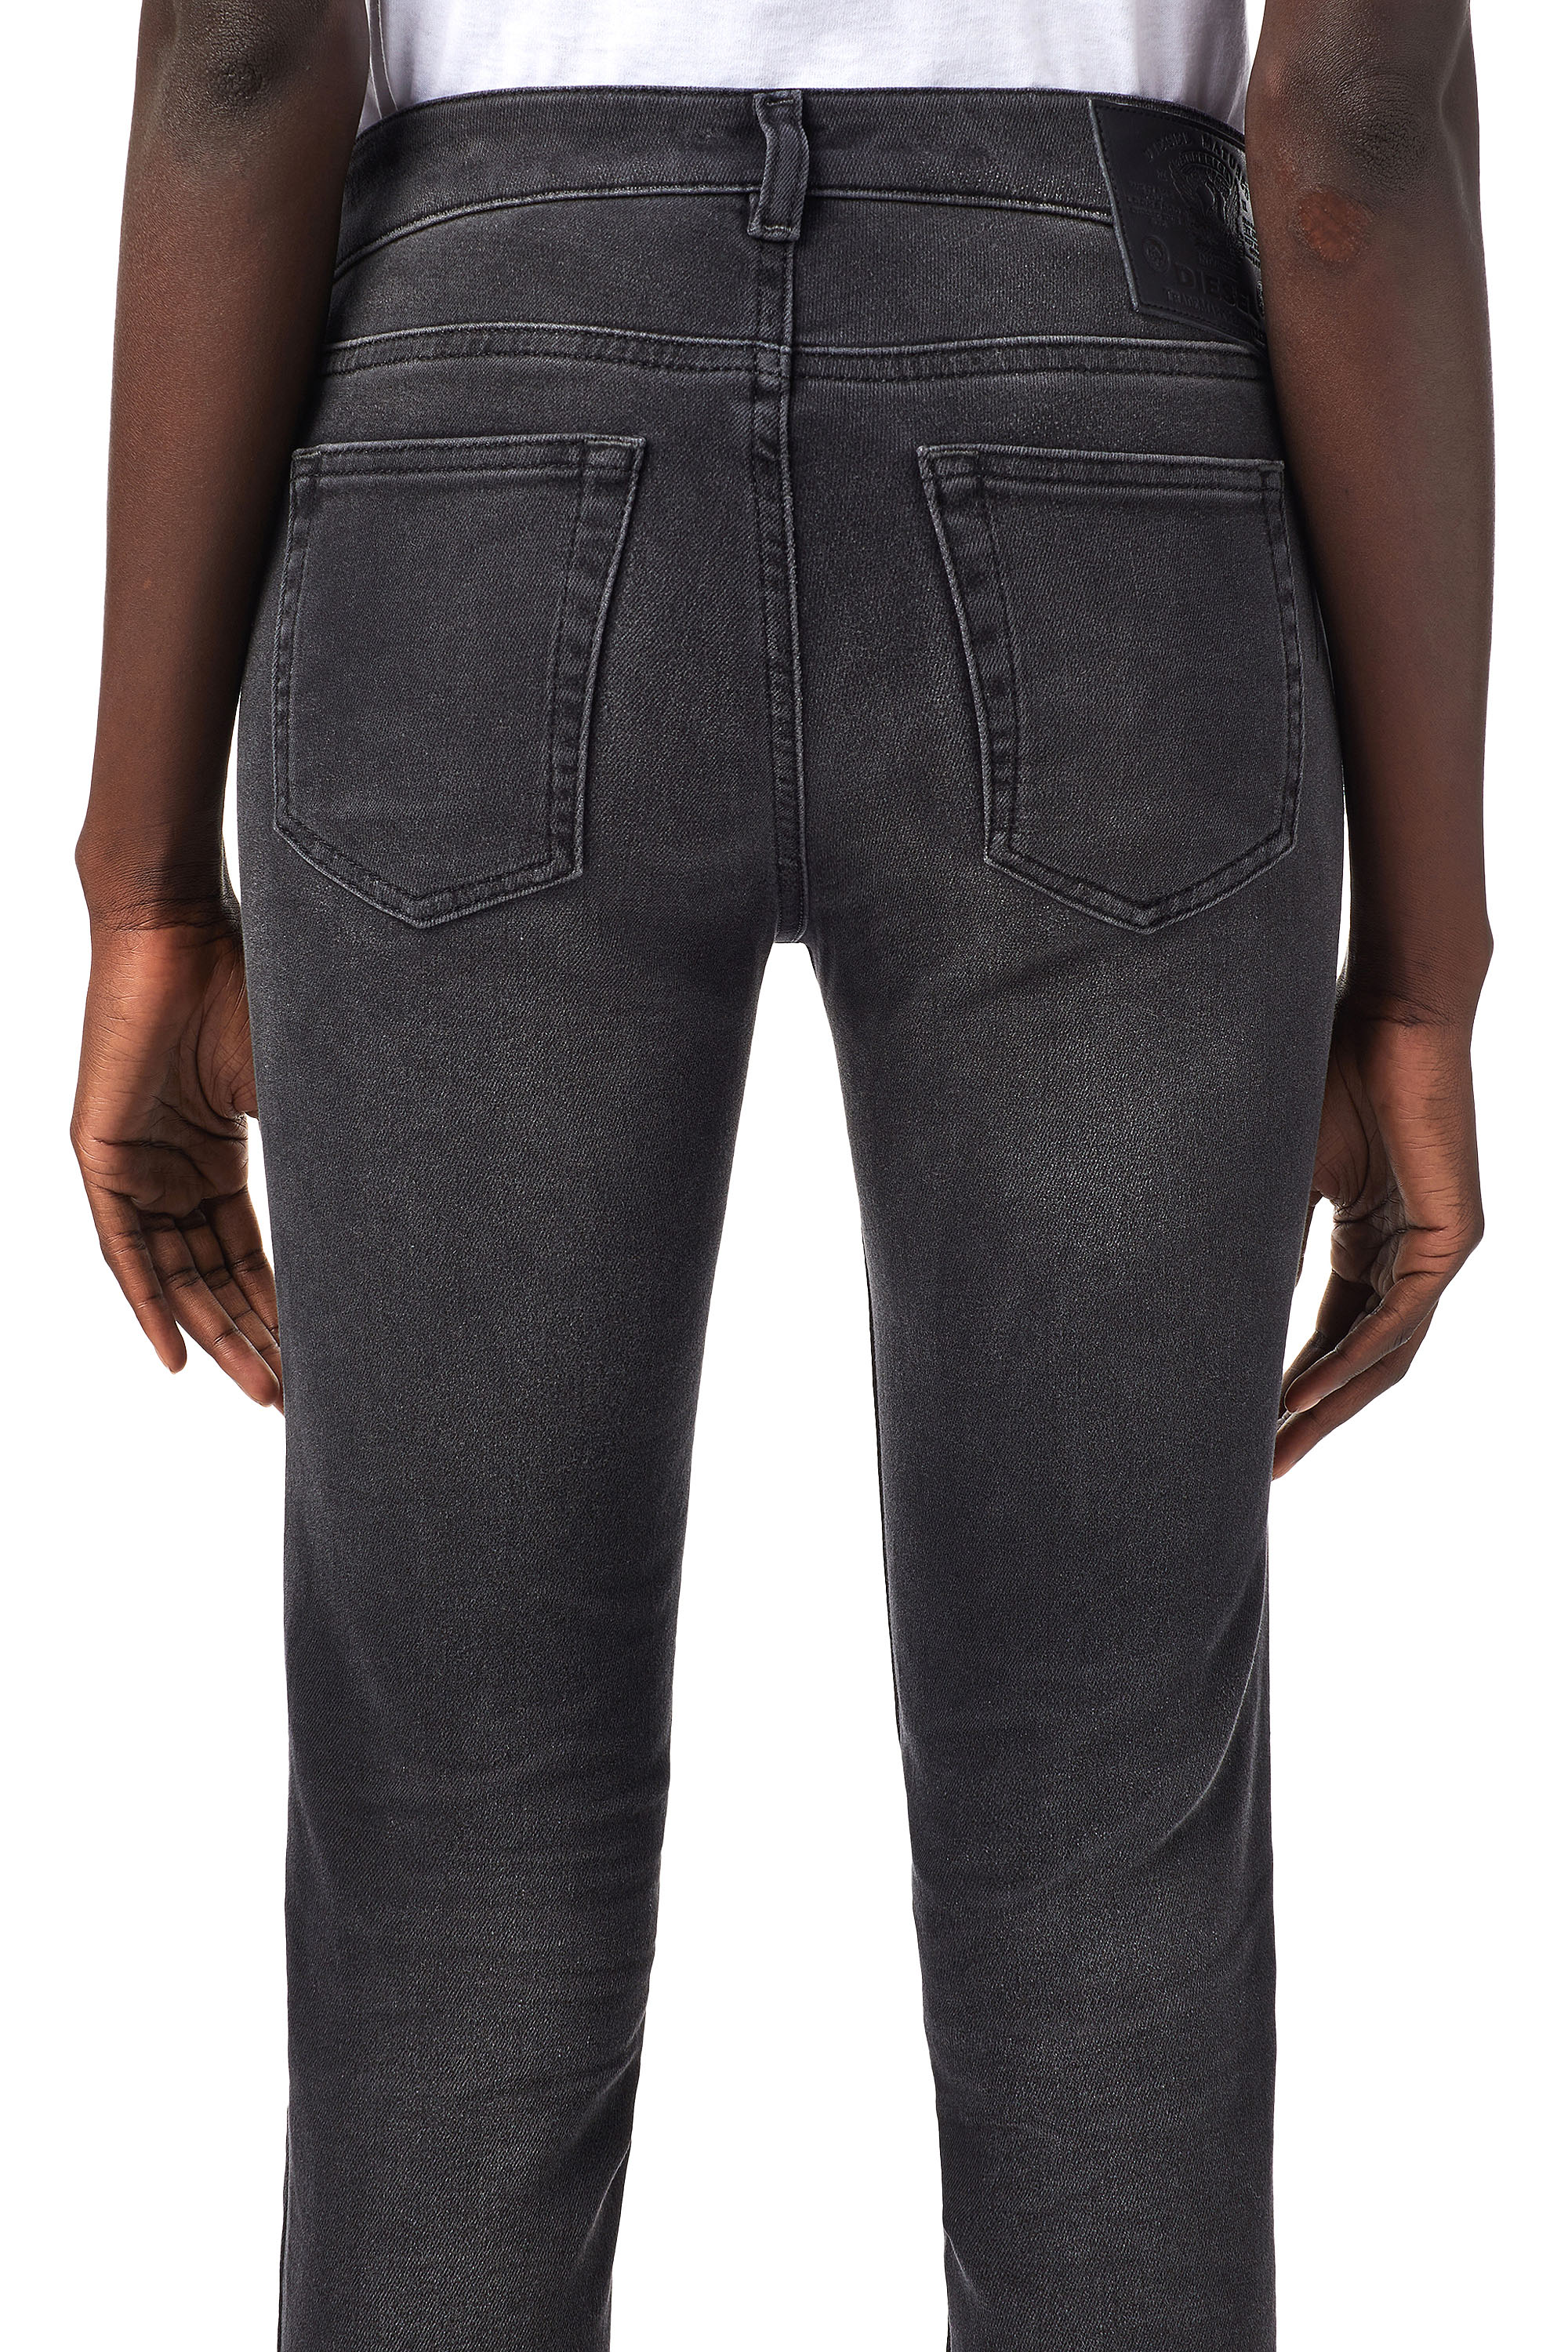 Diesel - D-Ollies Slim JoggJeans® 09B22, Black/Dark grey - Image 5